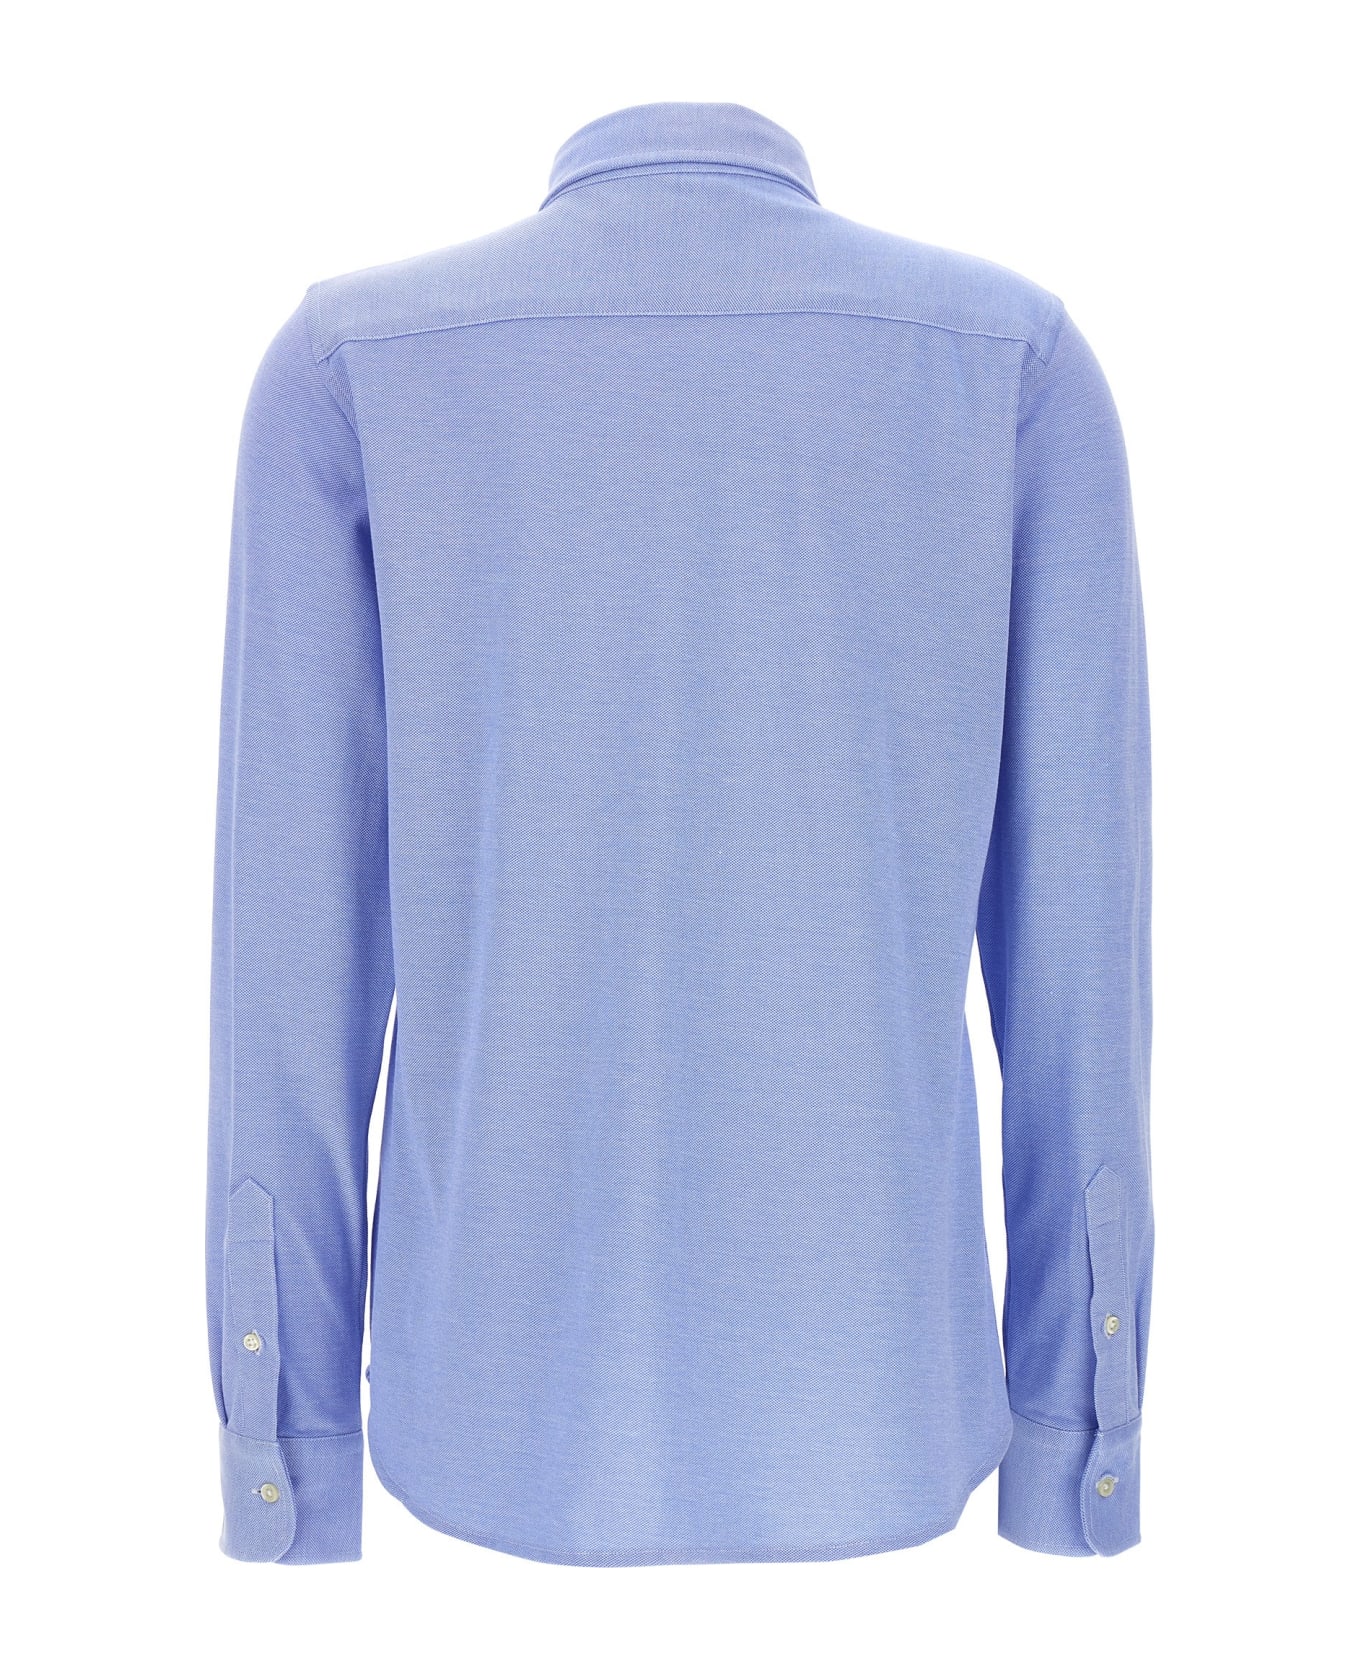 Ralph Lauren Logo Embroidered Buttoned Shirt - Light Blue